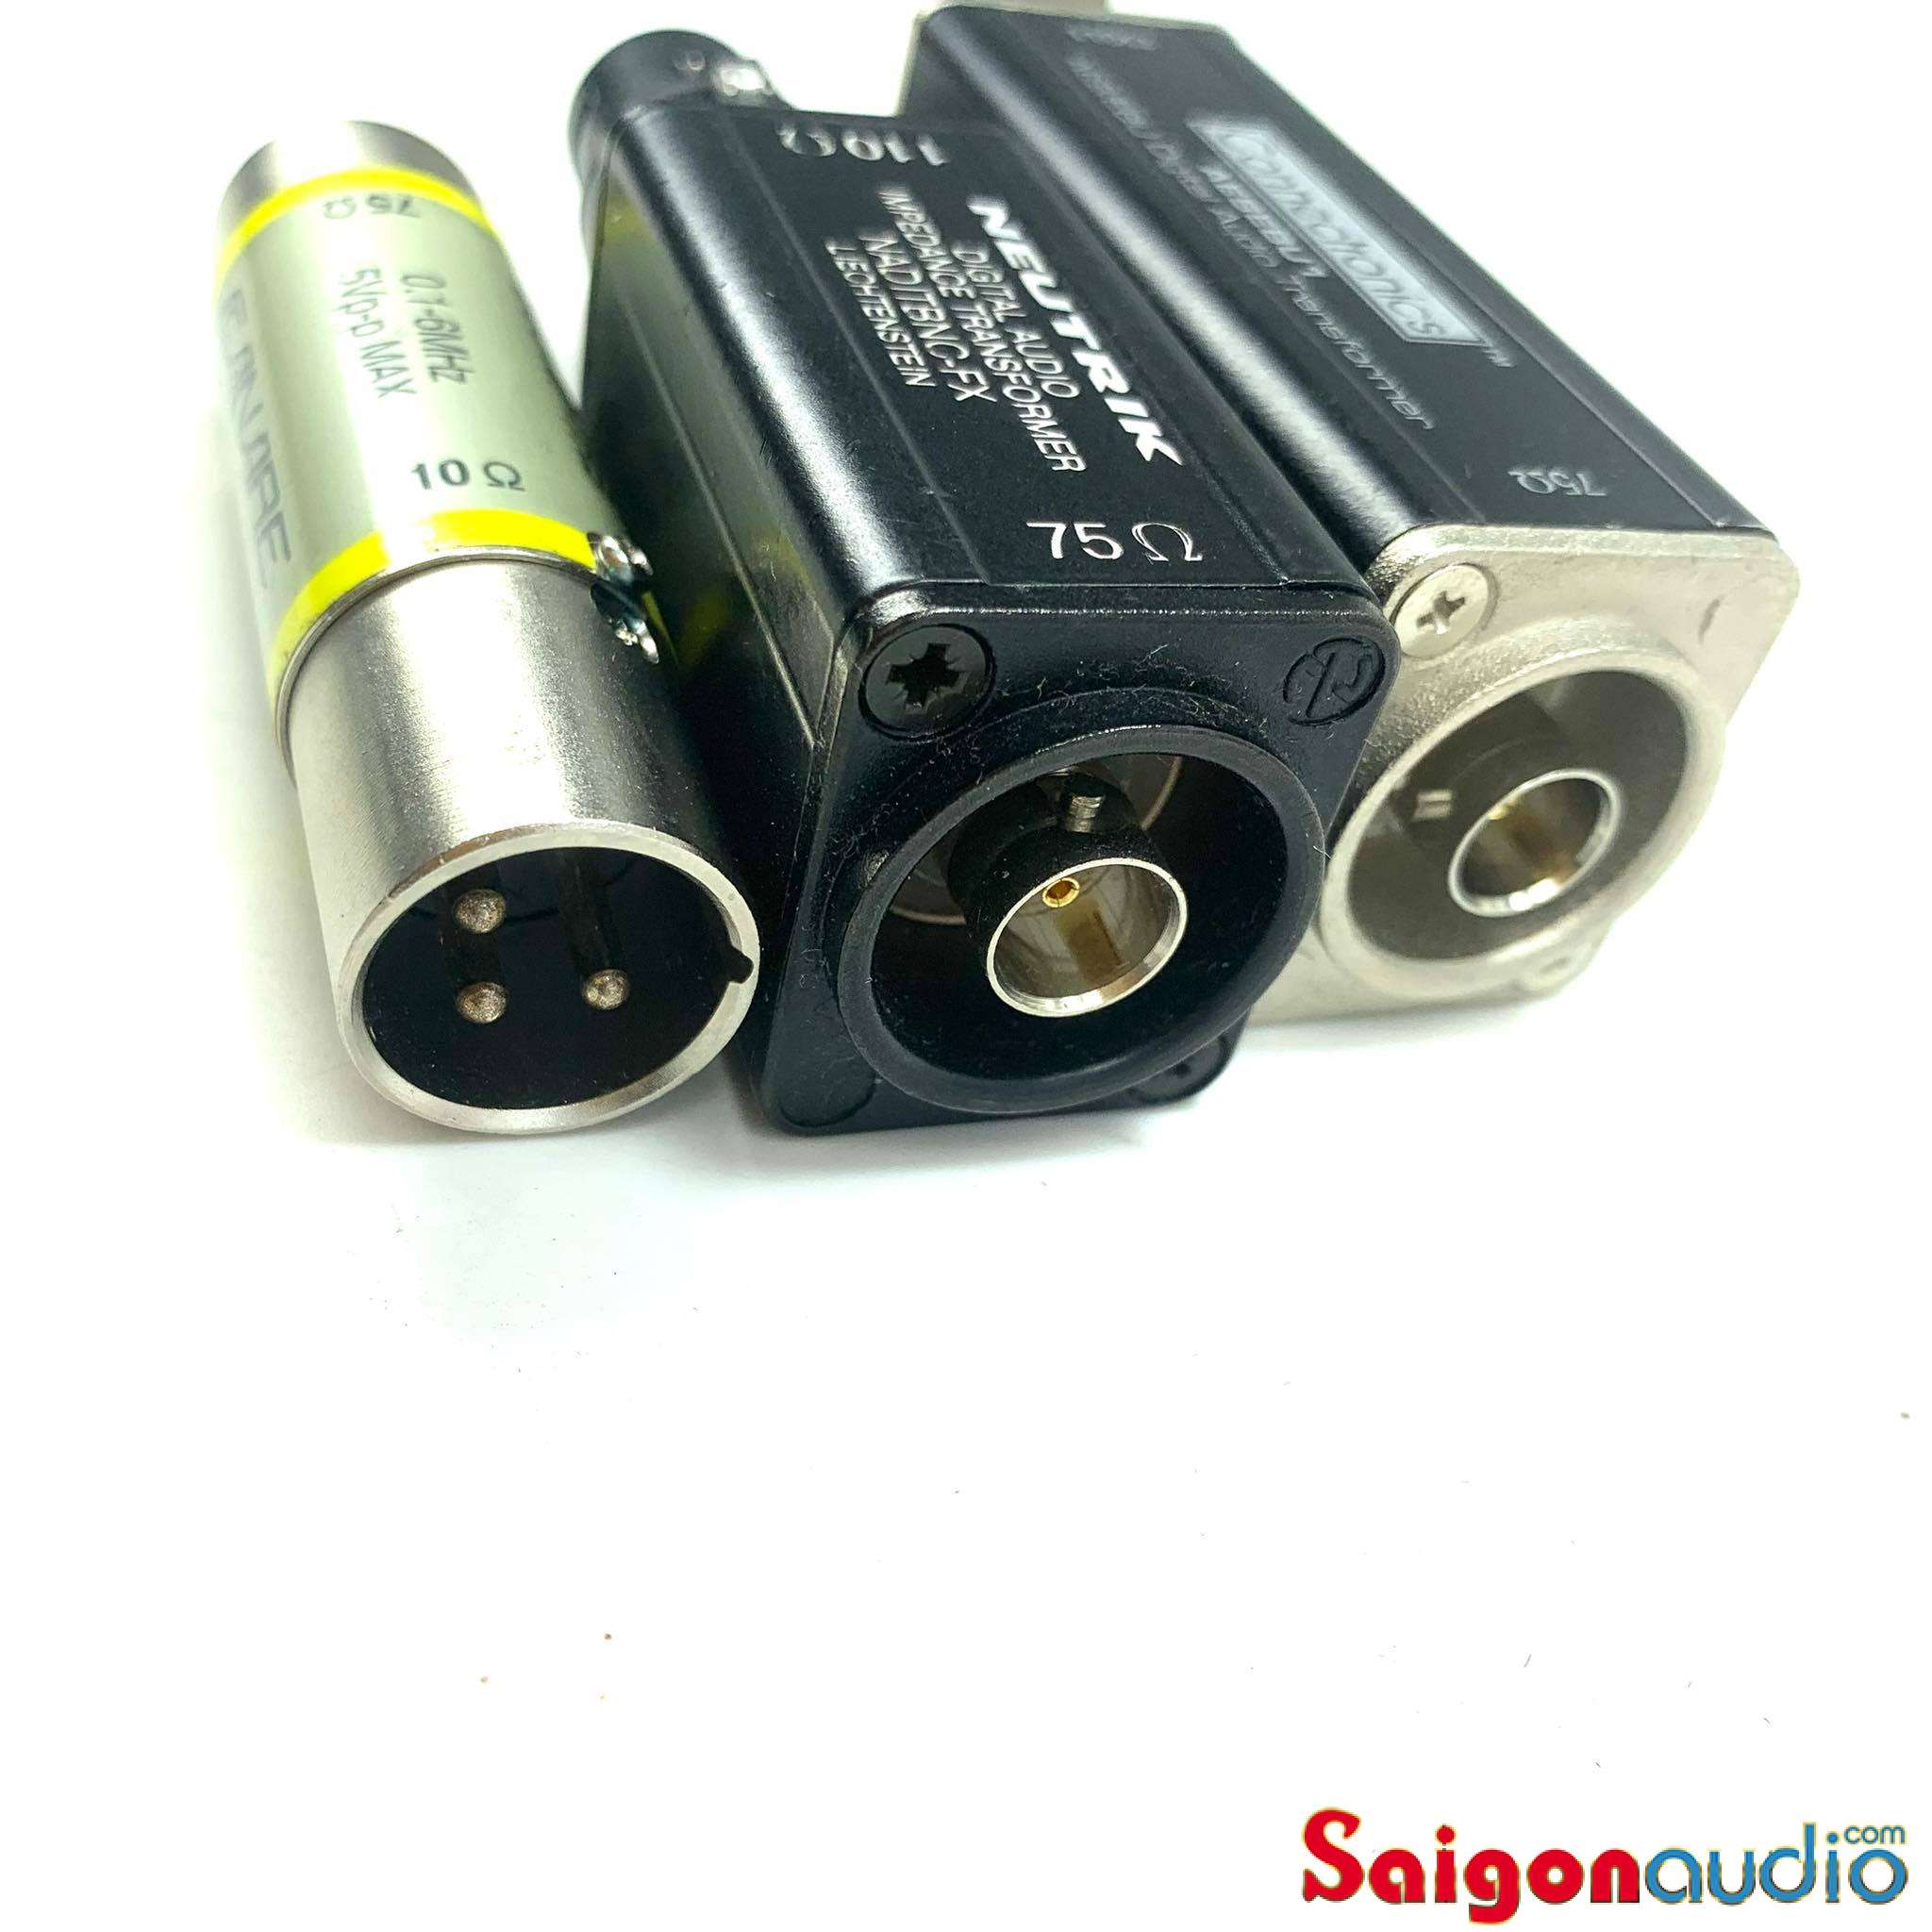 Adapter chuyển đổi tín hiệu số AES/EBU 110Ω ra coax 75Ω và coax 75Ω ra 110Ω